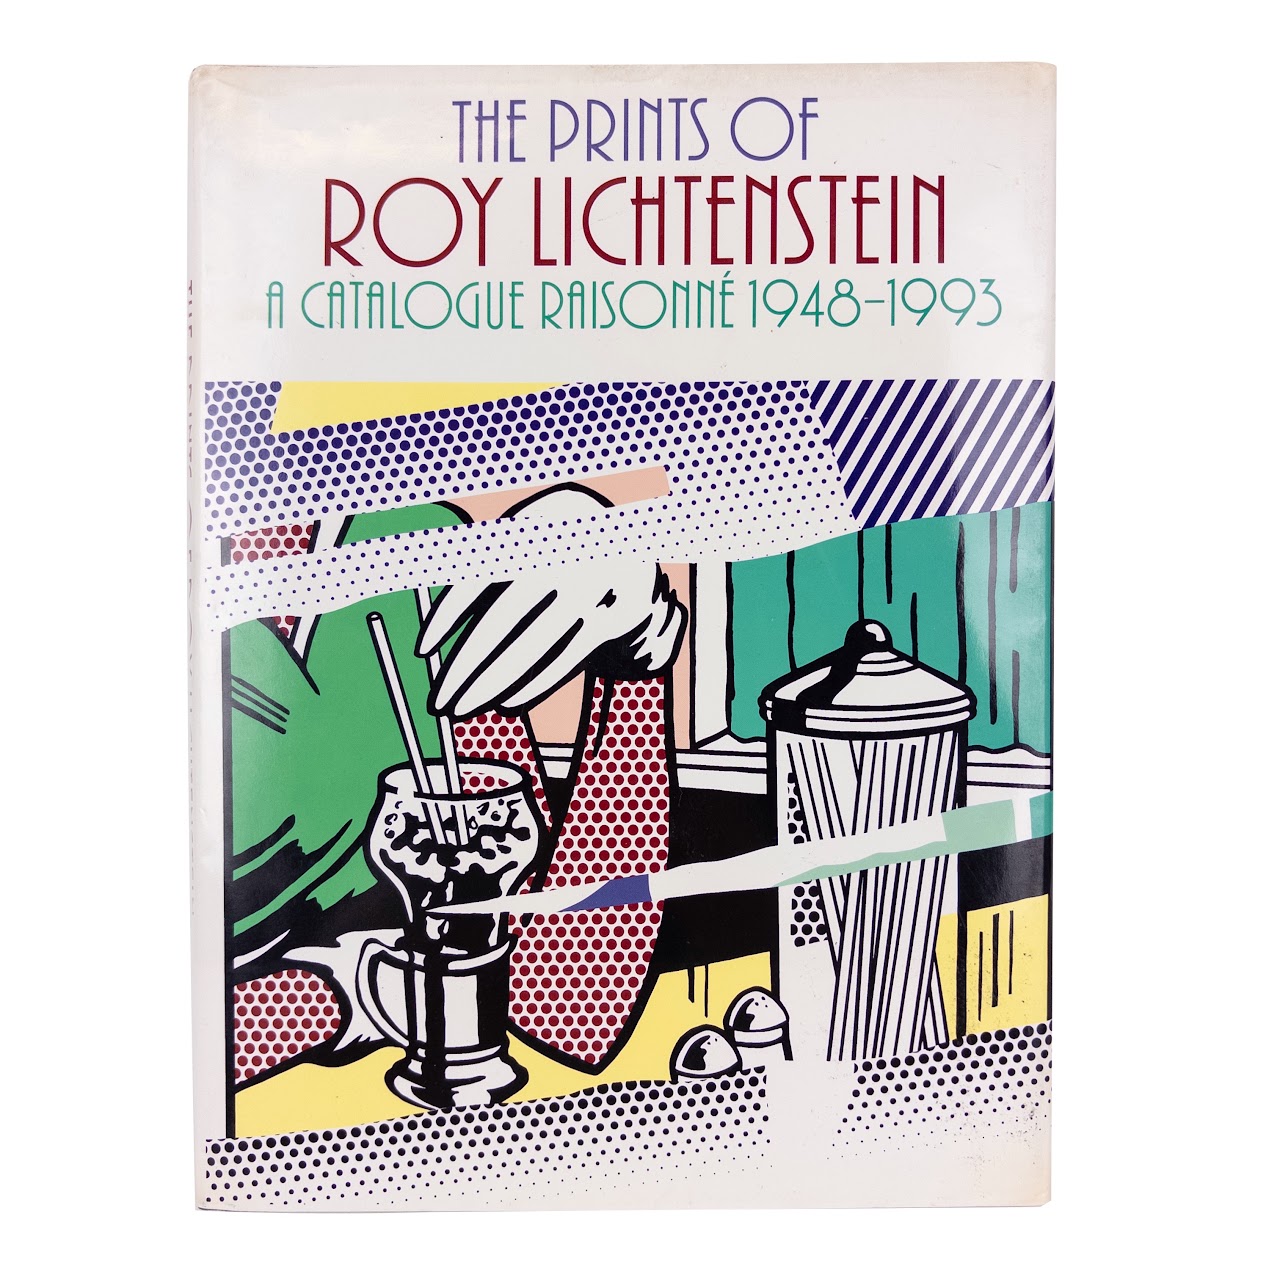 Mary Lee Corlett, 'The Prints Of Roy Lichtenstein' Catalogue Raisonne